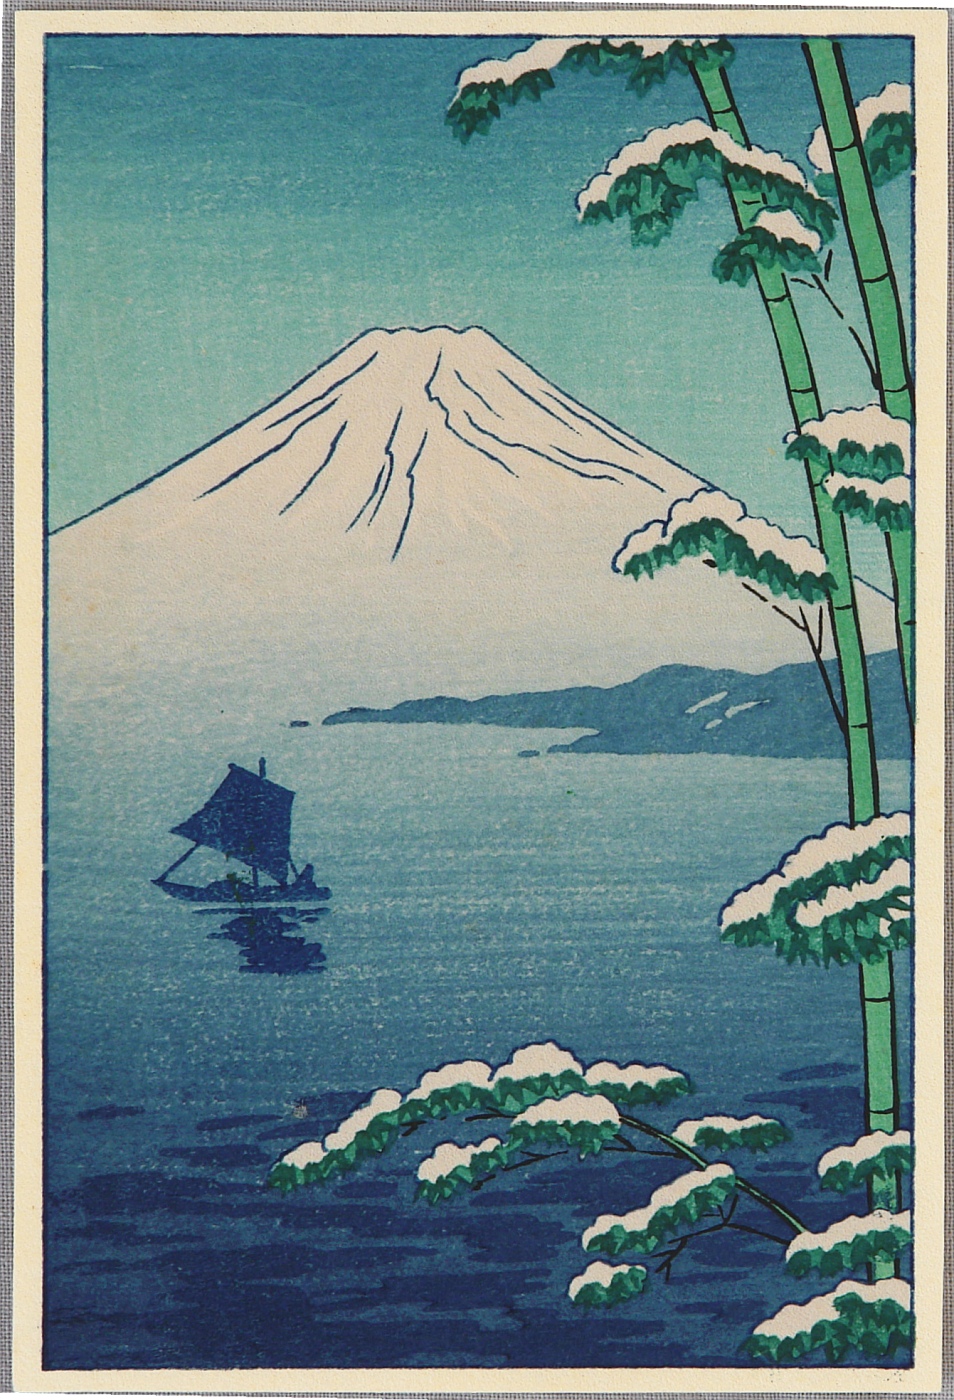 Pagoda and Mt. Fuji, 1940 - Asano Takeji - WikiArt.org